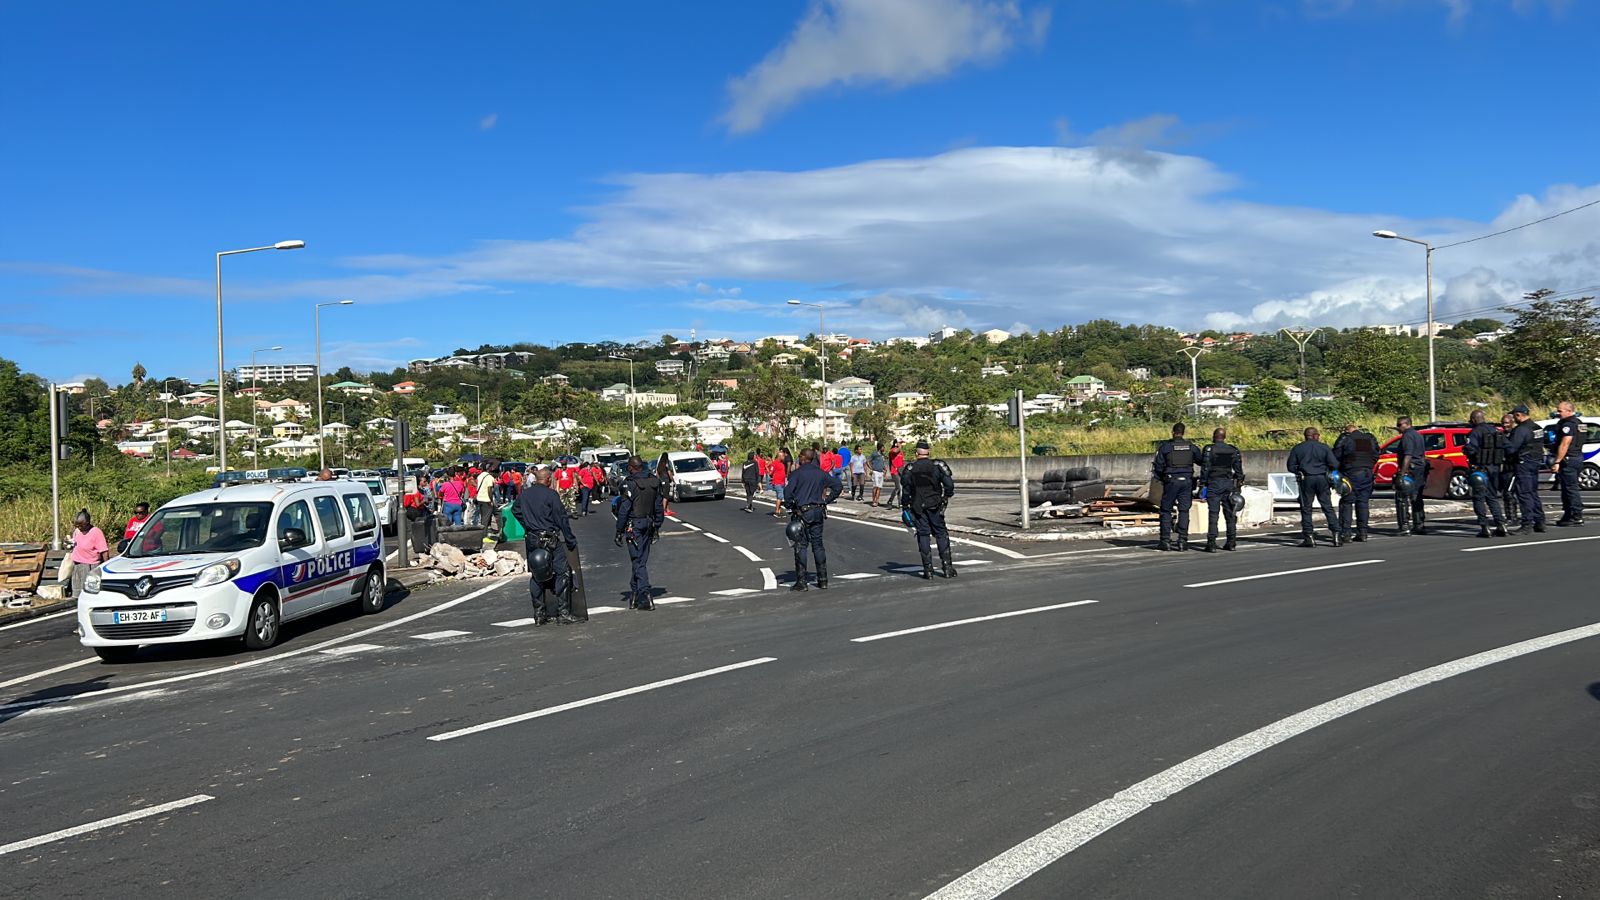     Le rond-point de Mahault totalement débloqué, policiers et gendarmes sur place

